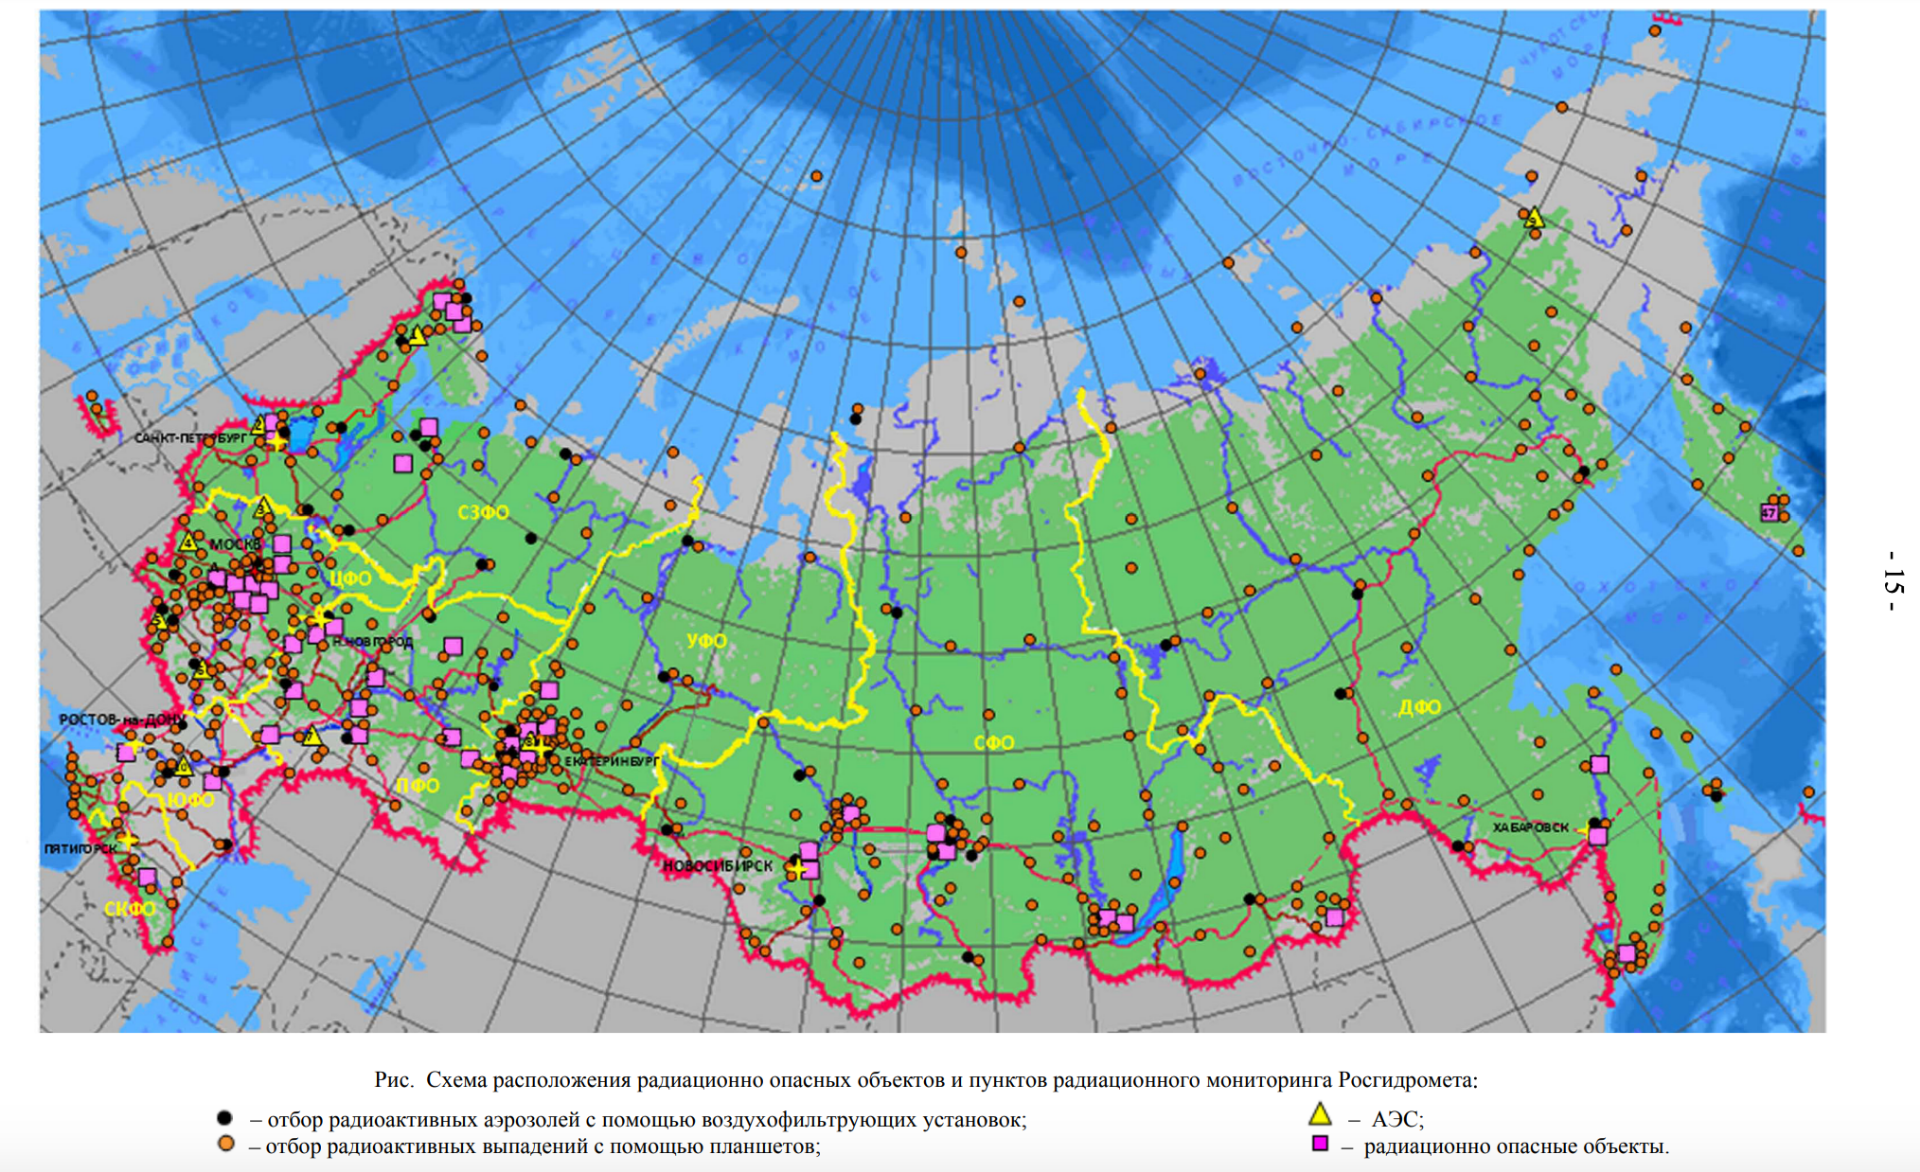 Аэс распространение. Пункты радиационного мониторинга на территории РФ. Радиационные объекты в России на карте. Карта радиационно опасных объектов. Карта радиационного мониторинга России.